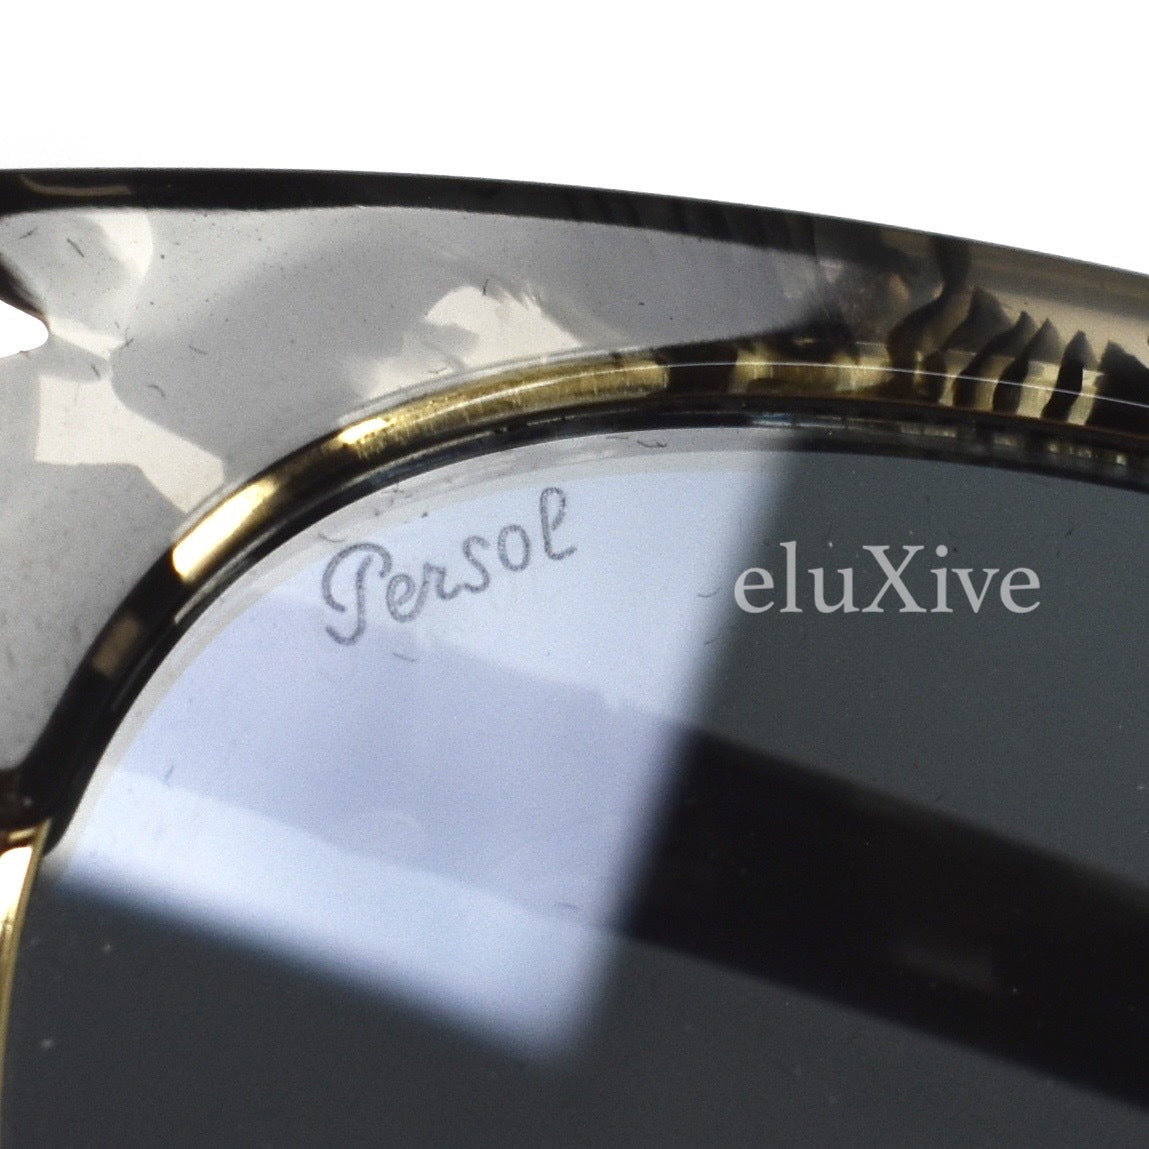 Persol - 3199-S Clubmaster Sunglasses (Black)